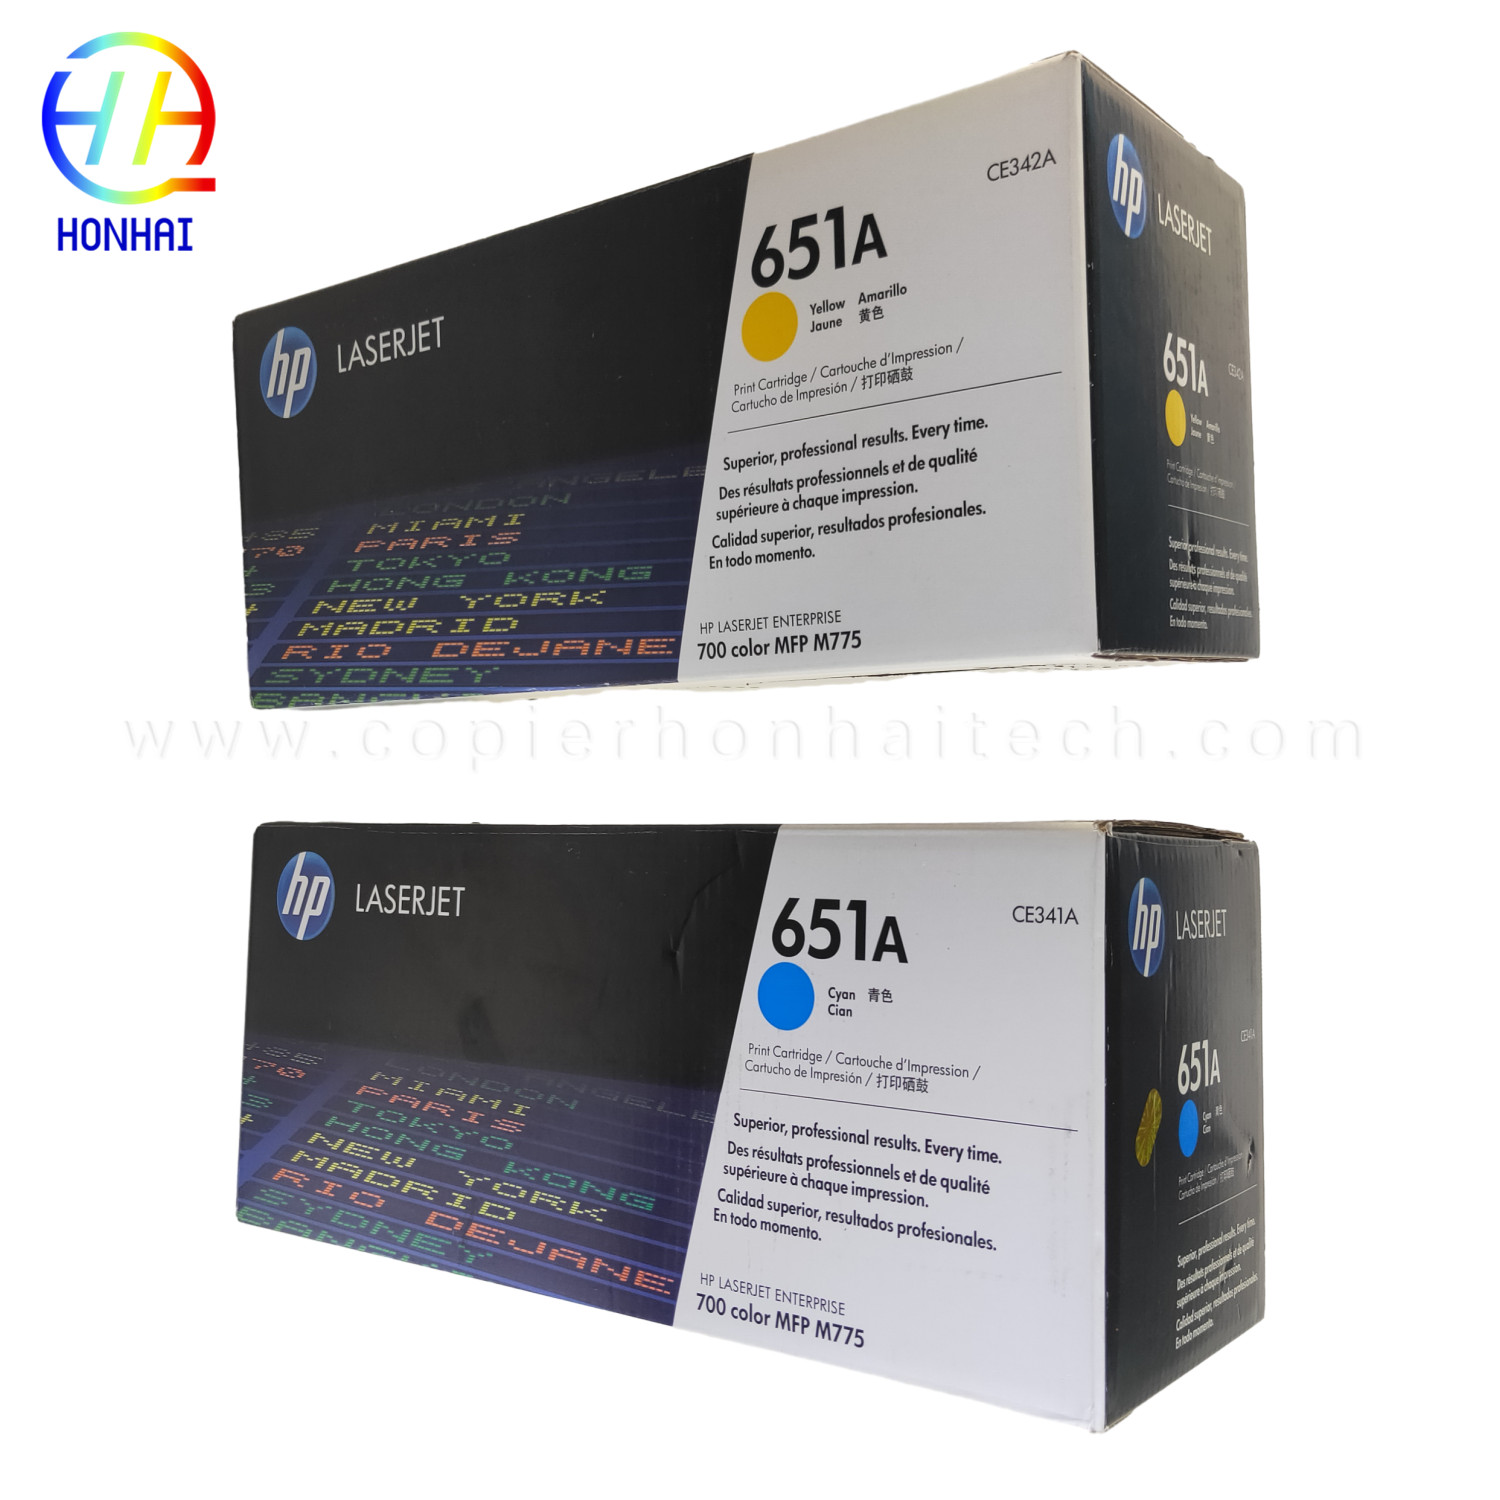 https://www.copierhonhaitech.com/original-toner-cartridge-for-hp-laserjet-enterprise-700-color-mfp-m775-series-651a-ce341a-yan-ce342ac-yellow-16000-page-product/